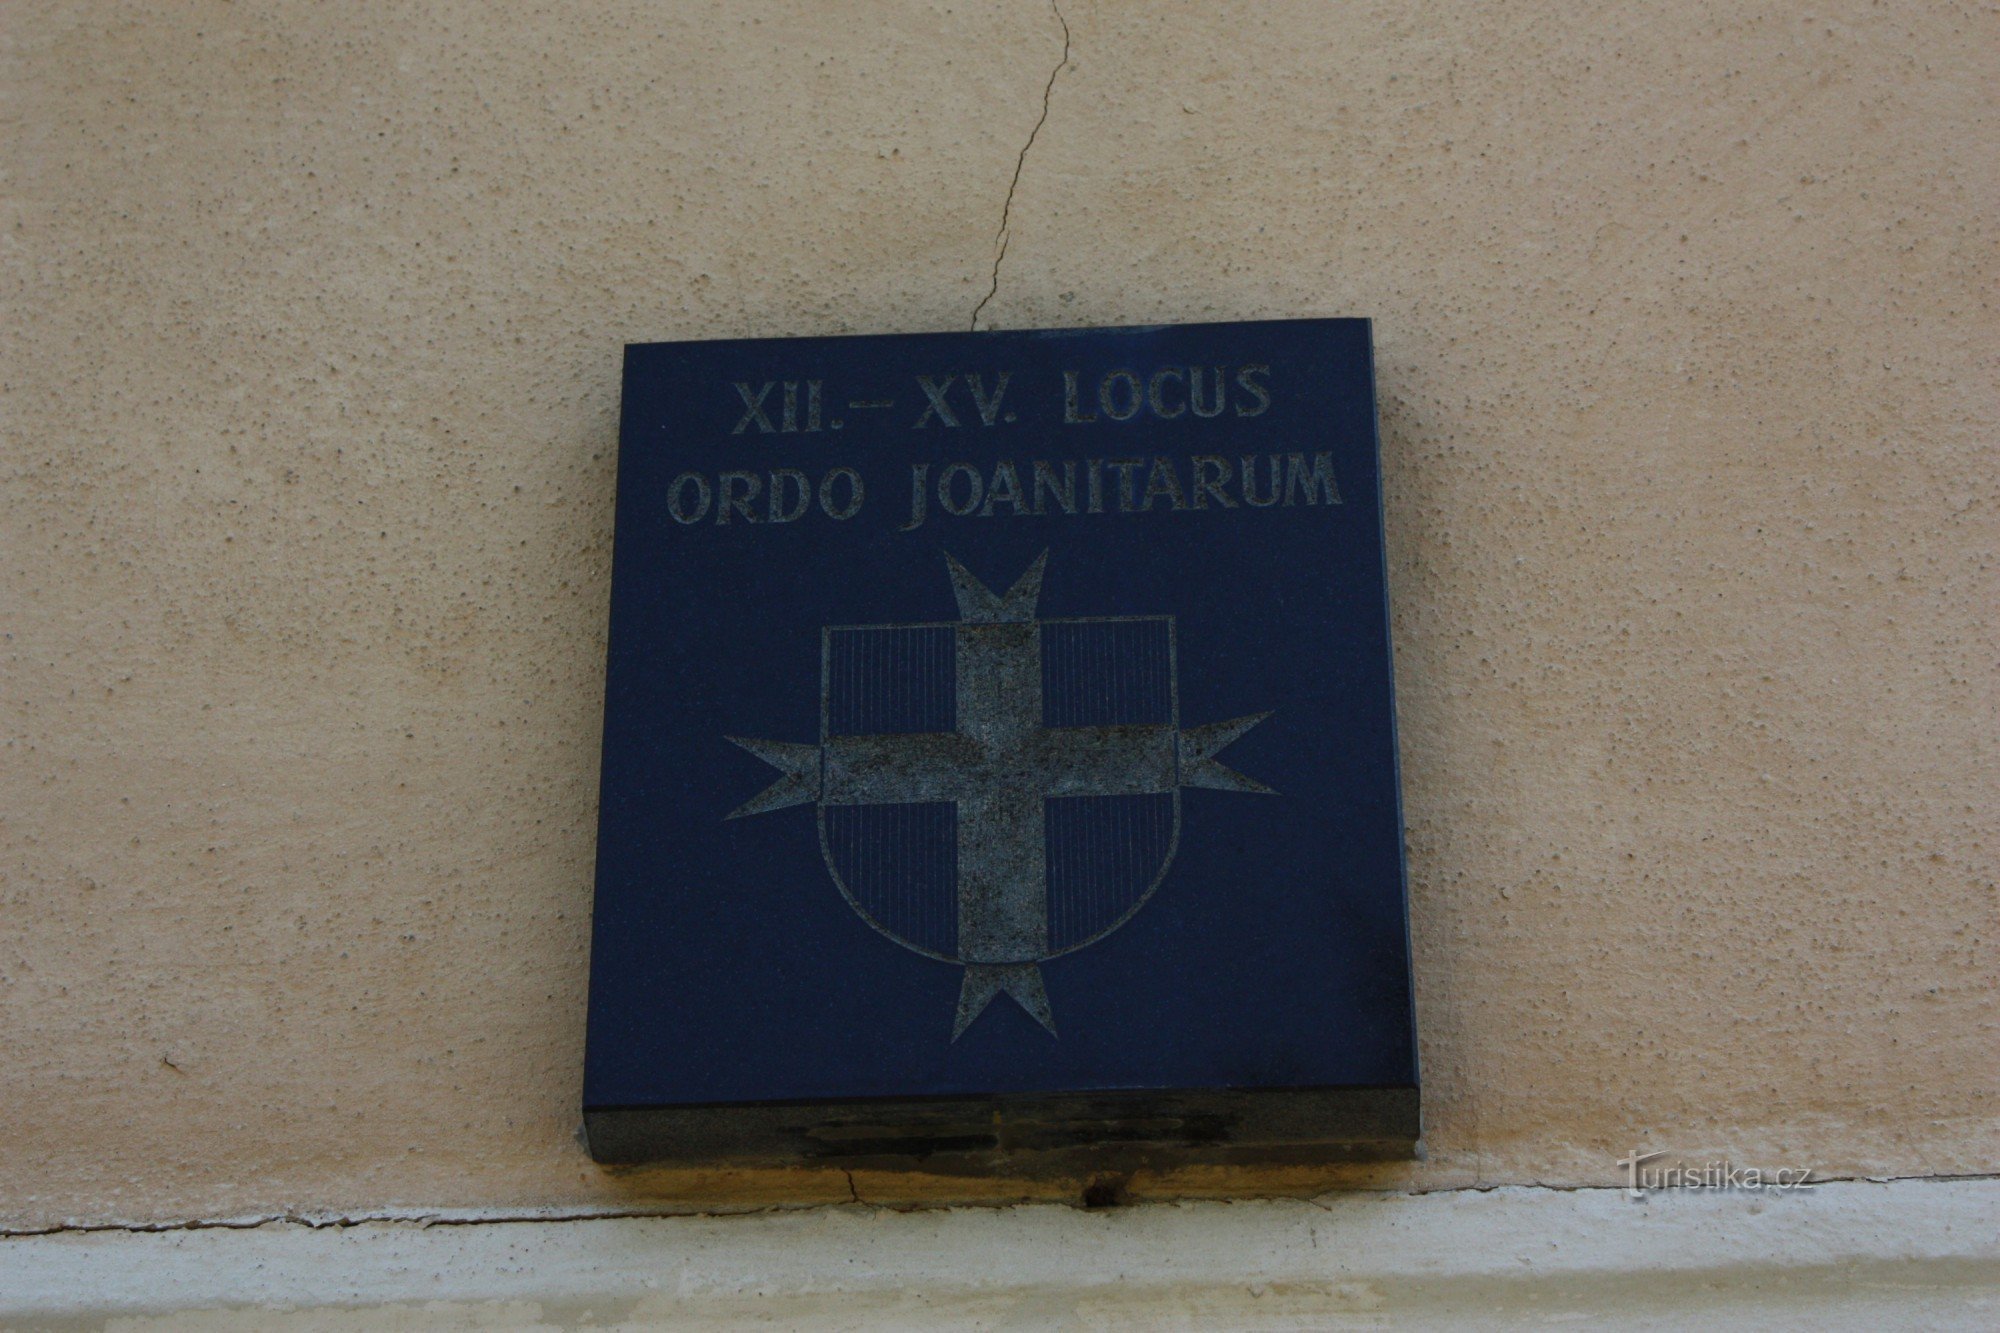 Brasão da ordem dos joanitas localizado acima da entrada da igreja em Orlovice